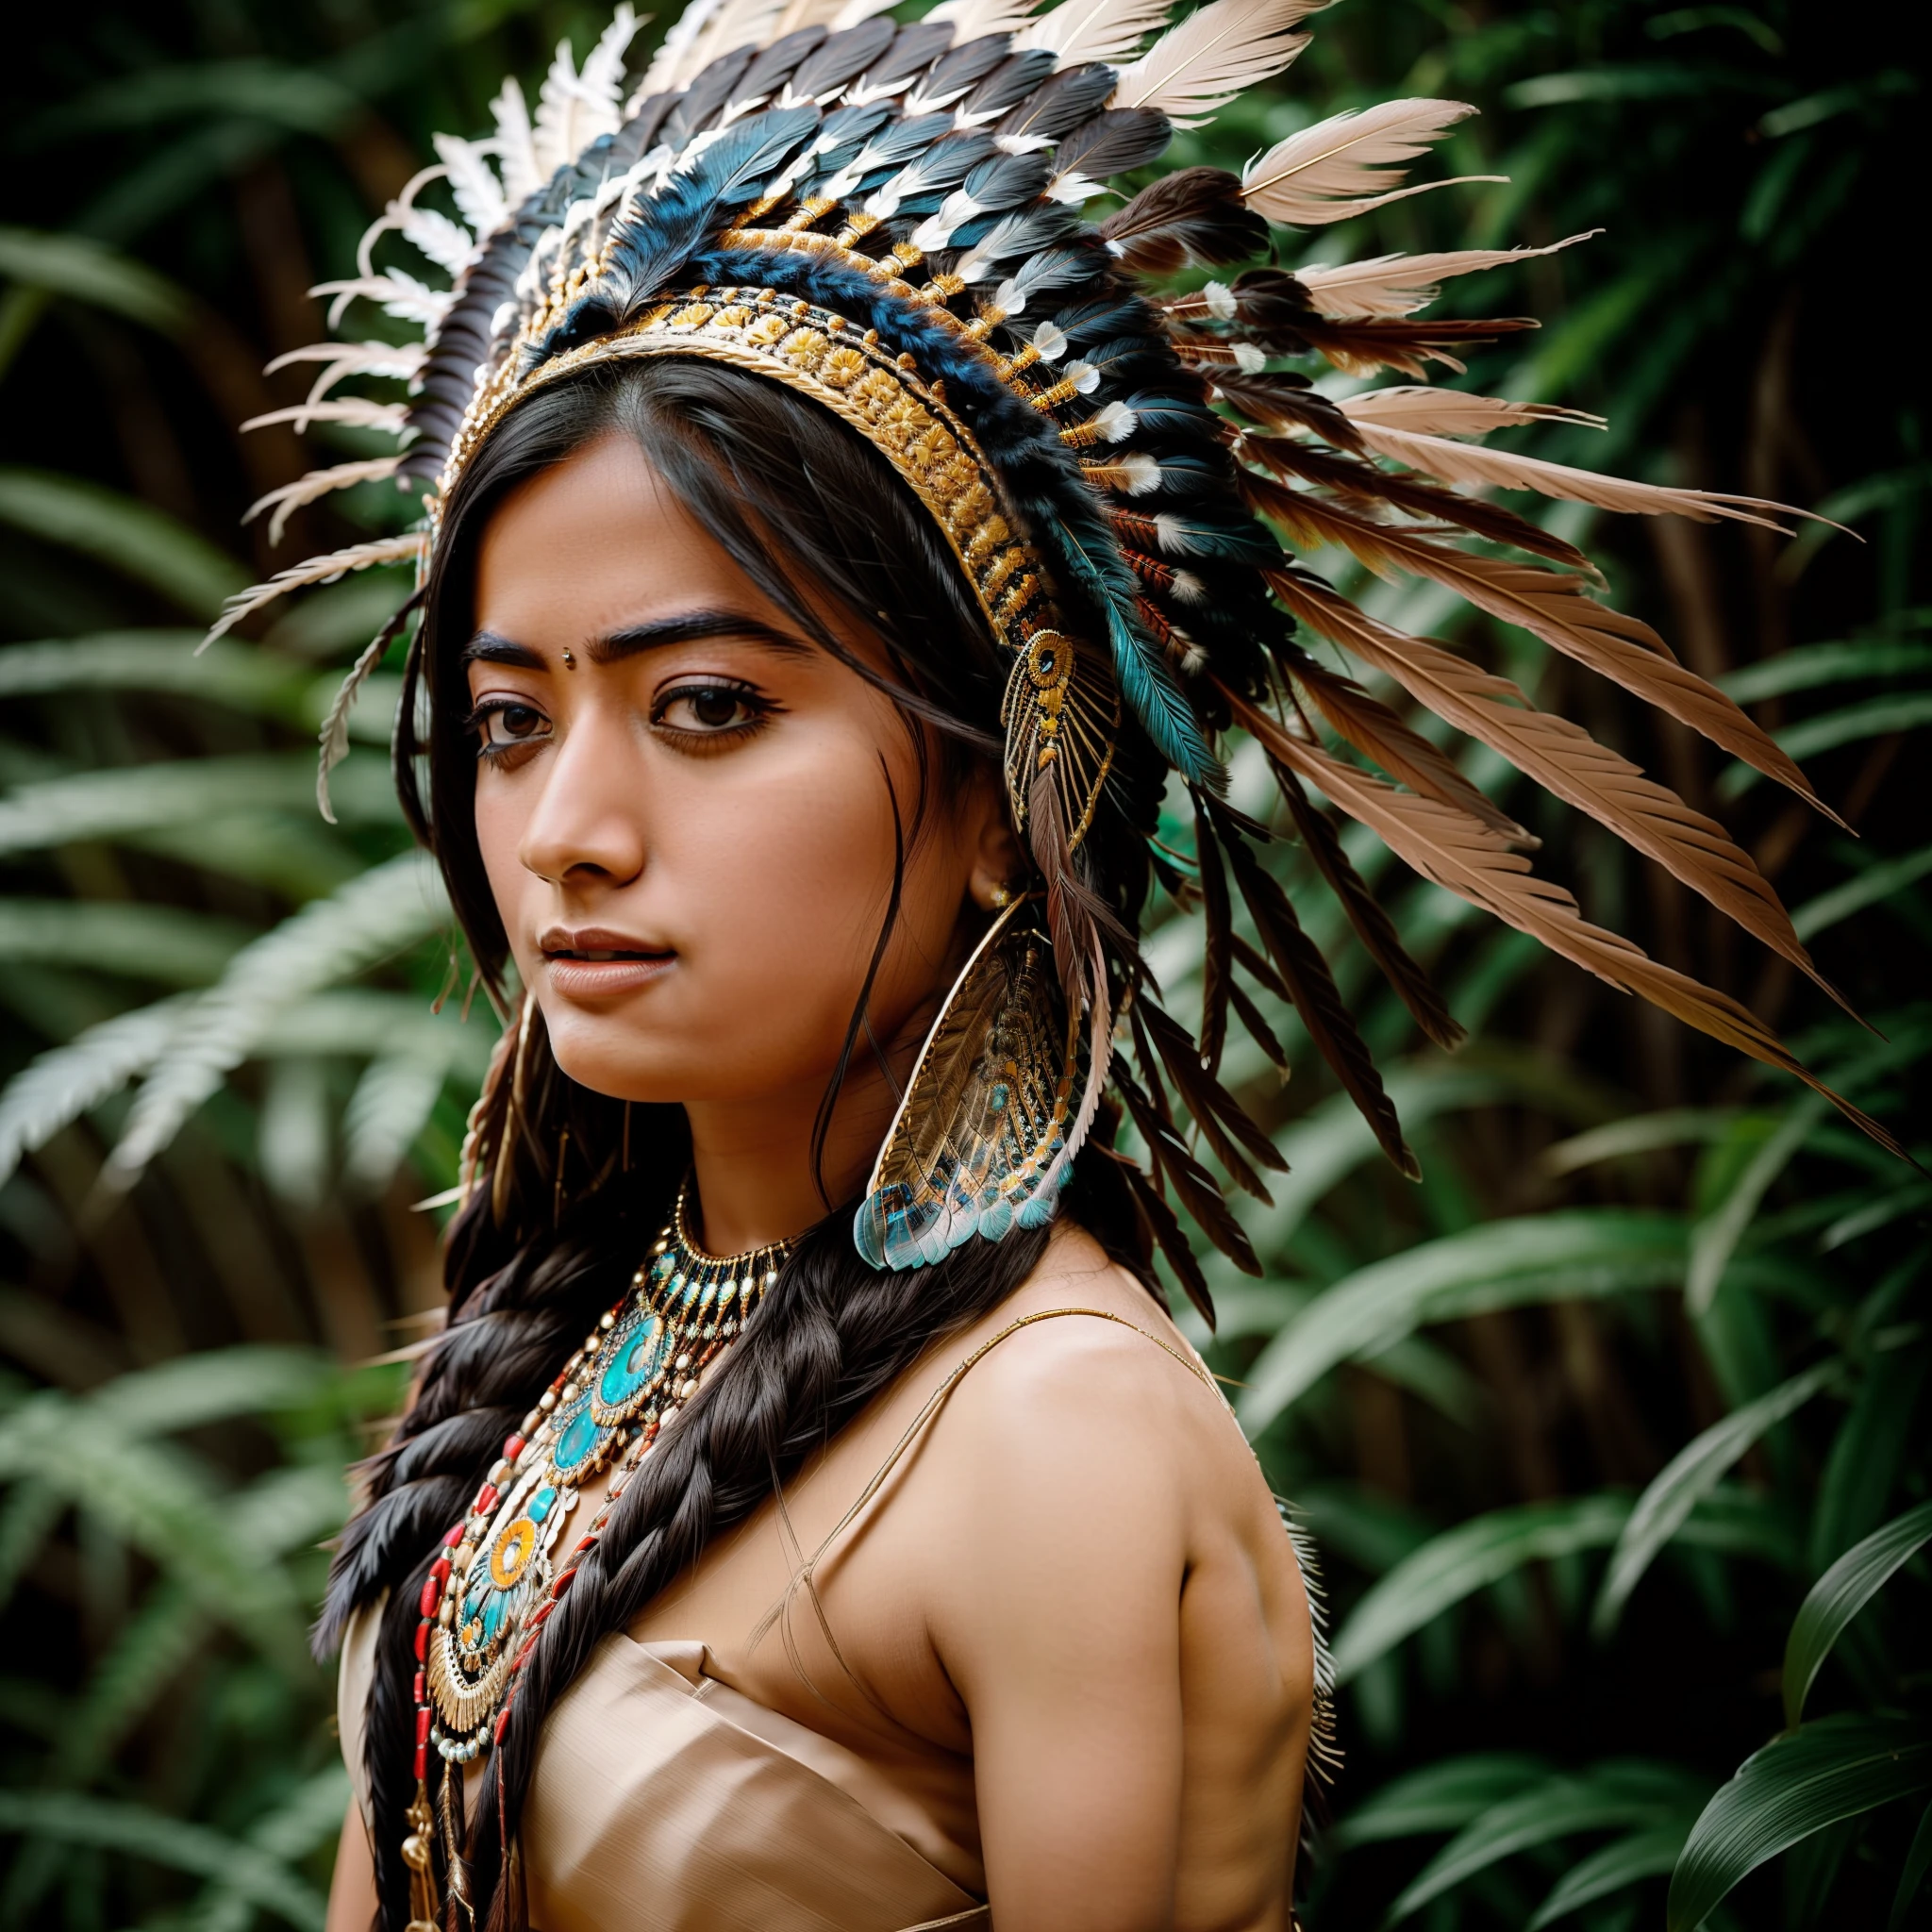 {{{süße Rashmika}}} young woman wearing a feather Kopfschmuck and a feather mask, sie ist nackt, aufwendiges Kostüm, feathered Kopfschmuck, Kopfschmuck, ornate Kopfschmuck, centered Kopfschmuck, amerikanischer Ureinwohner, Porträt einer aztekischen Prinzessin, Schönes Kostüm, indischer Krieger, amerikanischer Ureinwohner warrior, american indian Kopfschmuck, : amerikanischer Ureinwohner shamen fantasy, trägt eine Krone aus bunten Federn